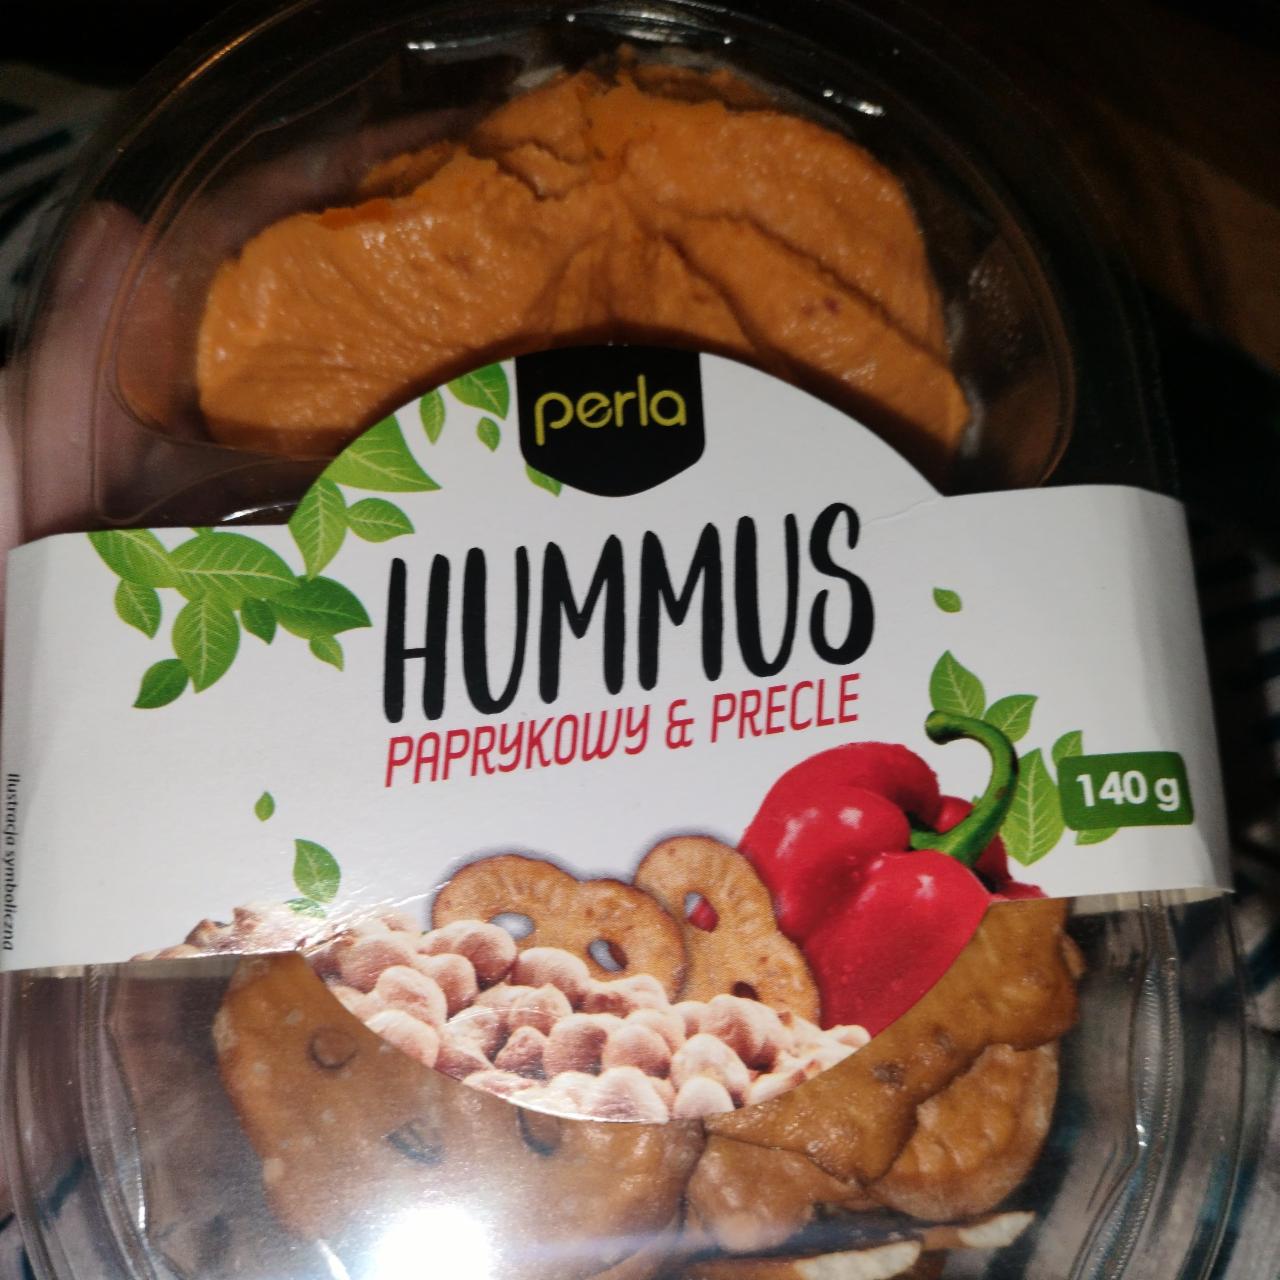 Zdjęcia - Hummus paprykowy i precle perla